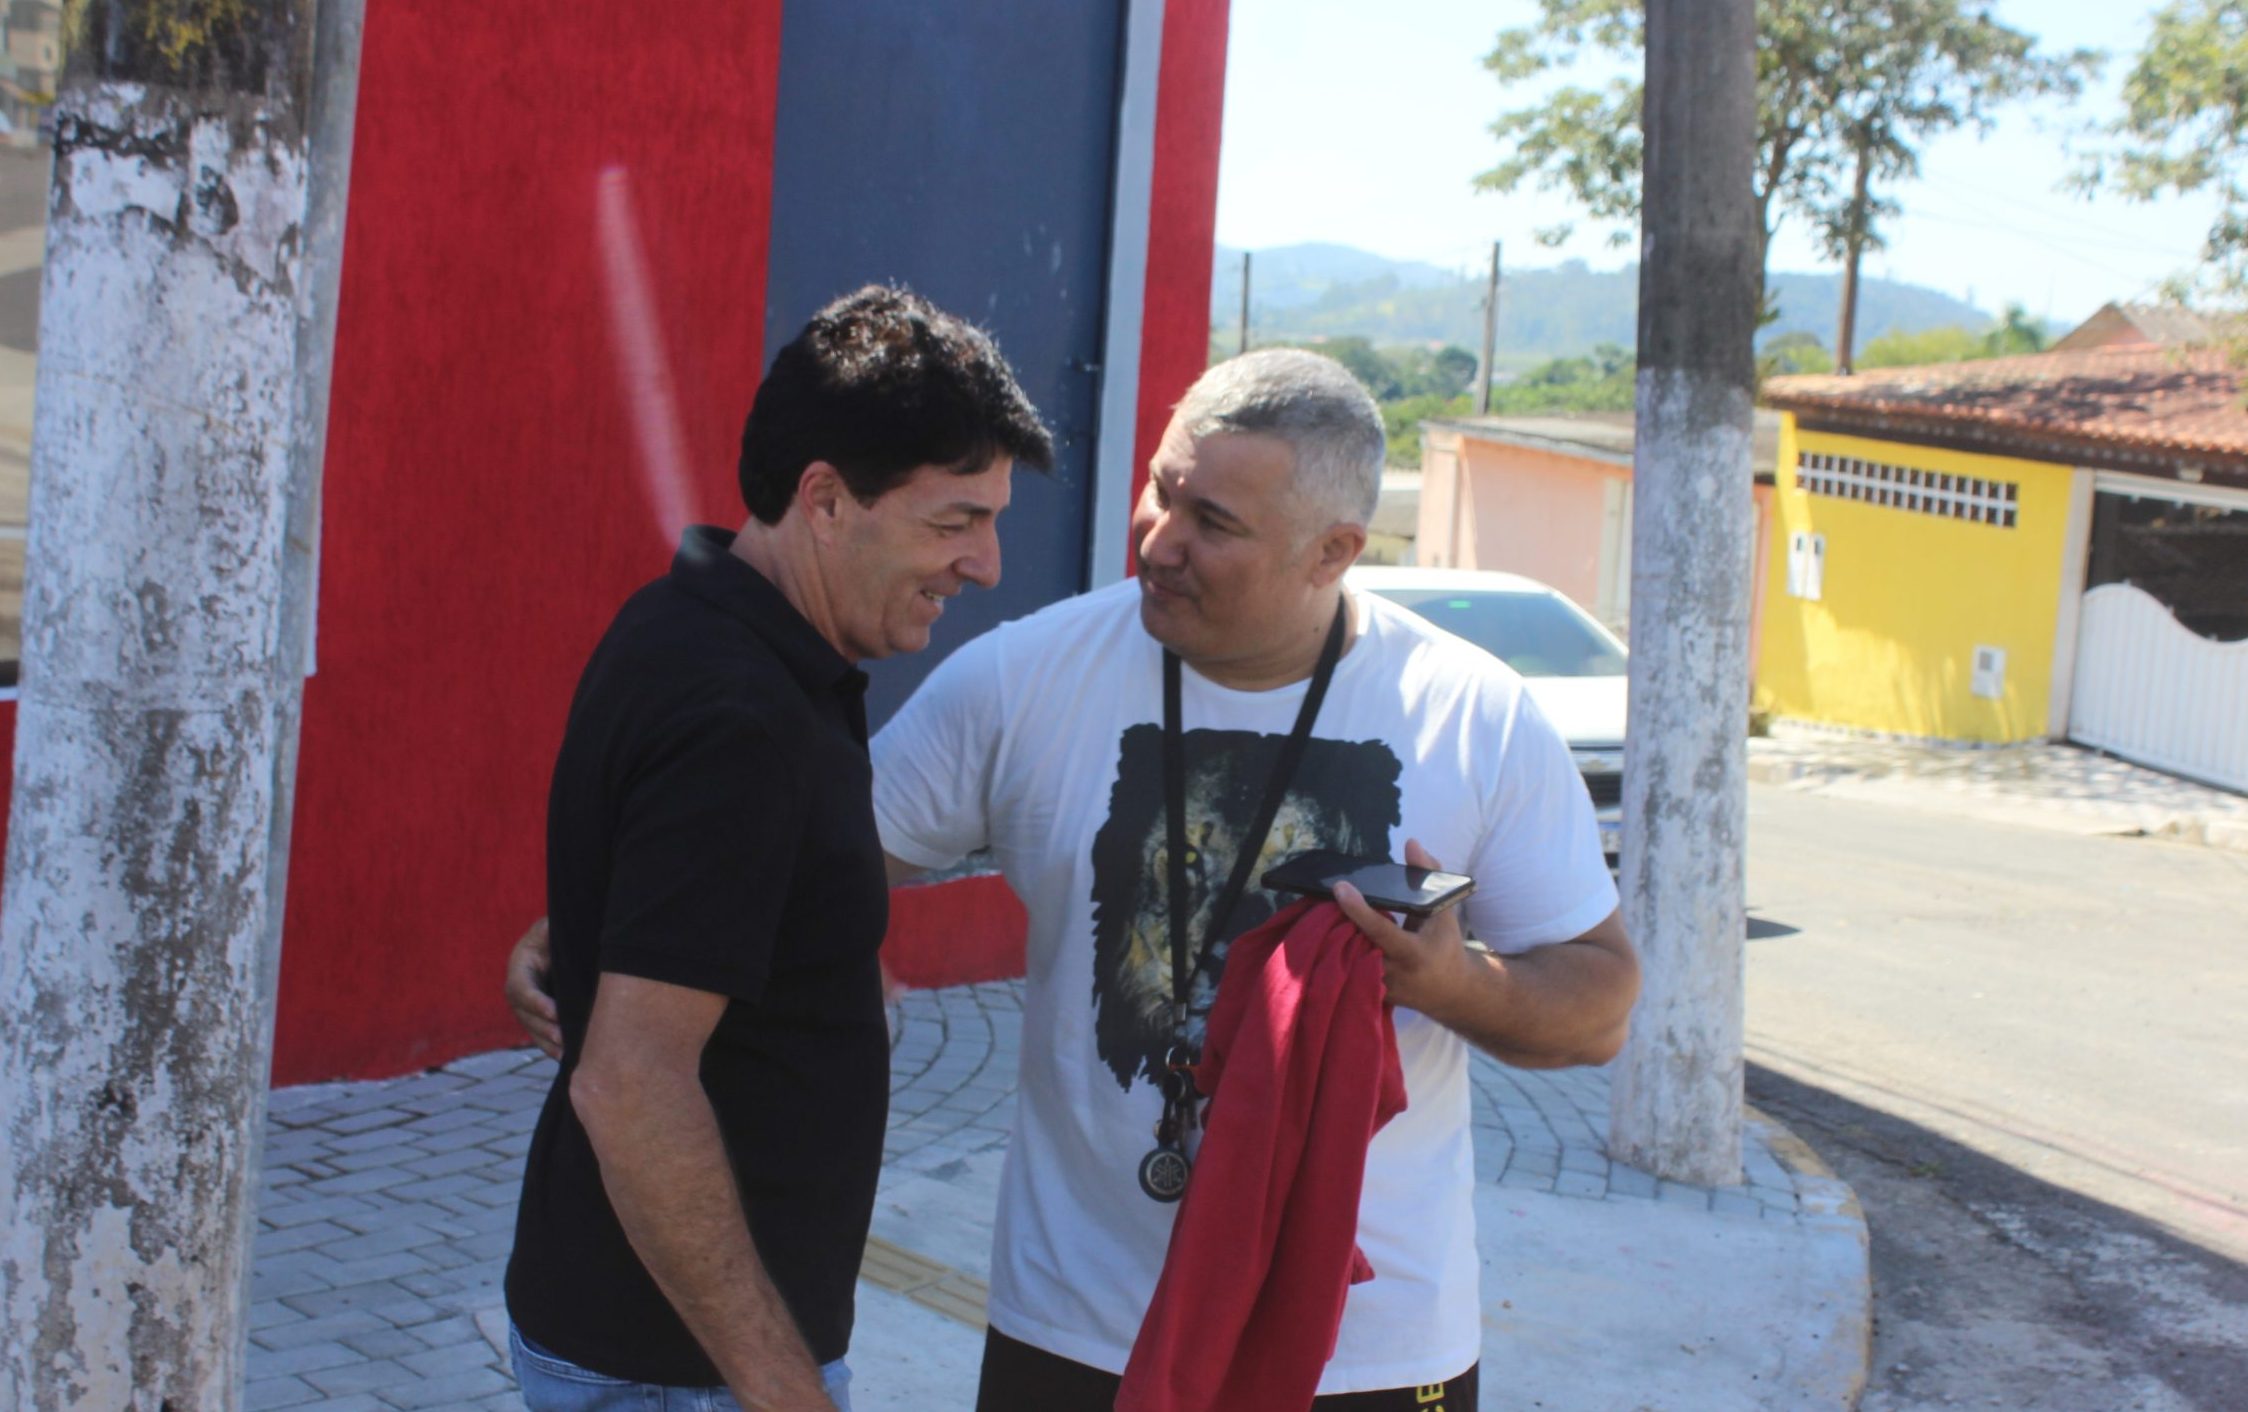 Munícipe expressa gratidão ao prefeito. Foto: Diarioesp.com.br